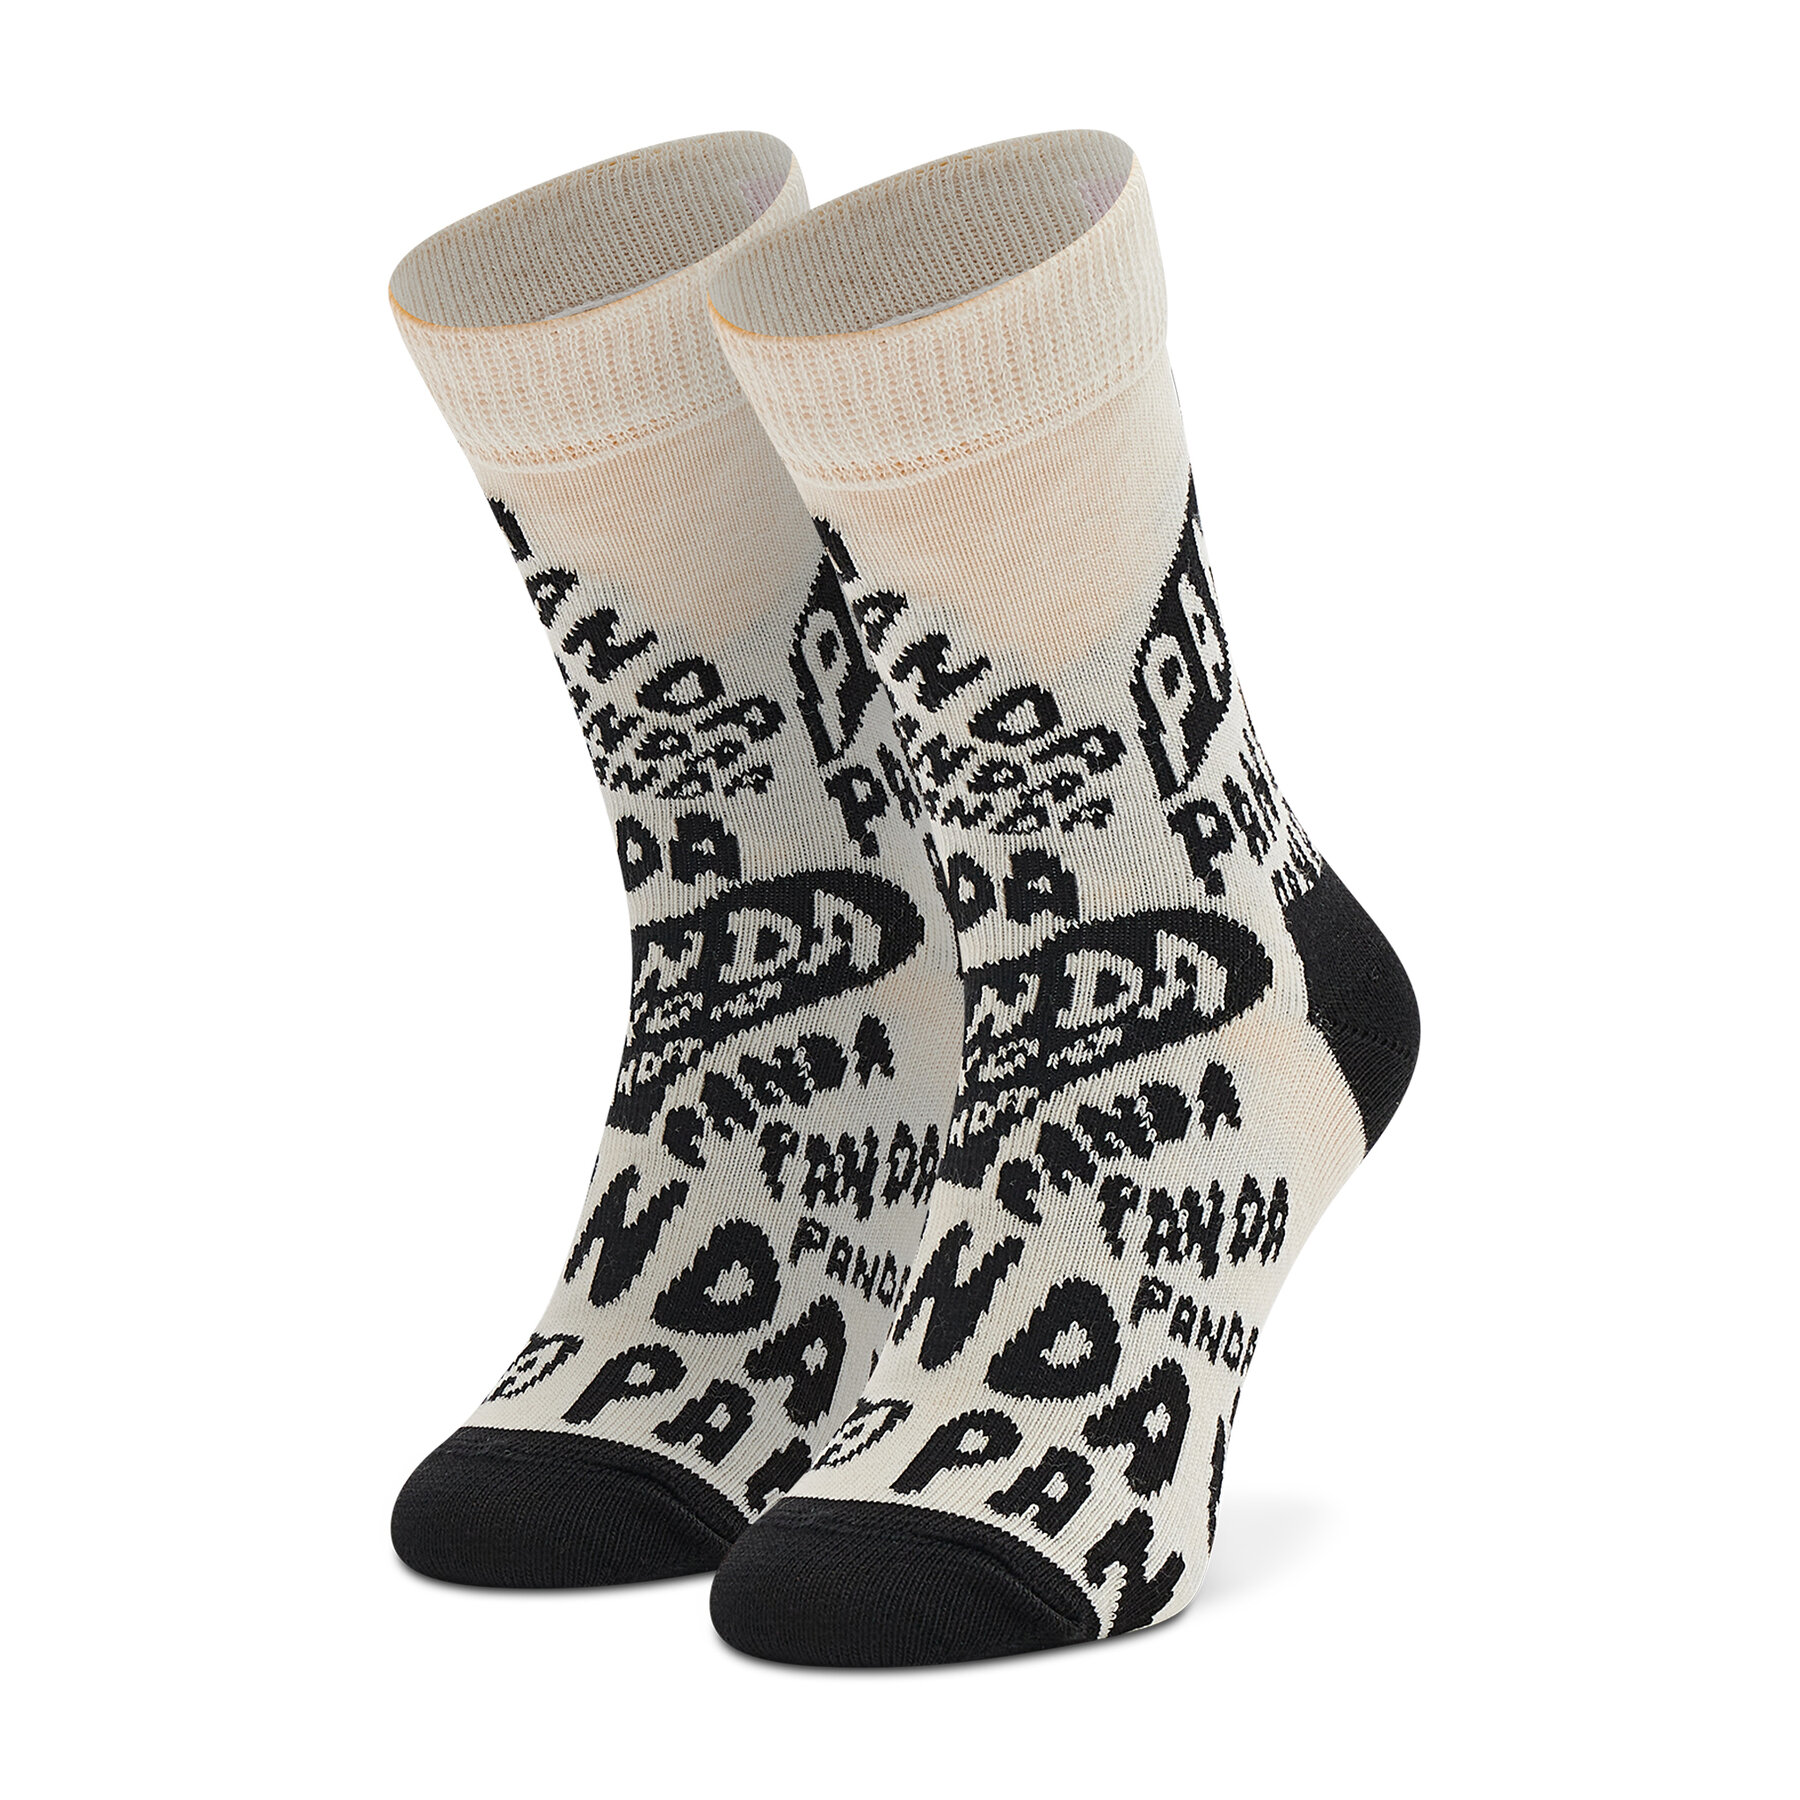 Chaussettes hautes enfant Happy Socks KPAN01-1900 Beige